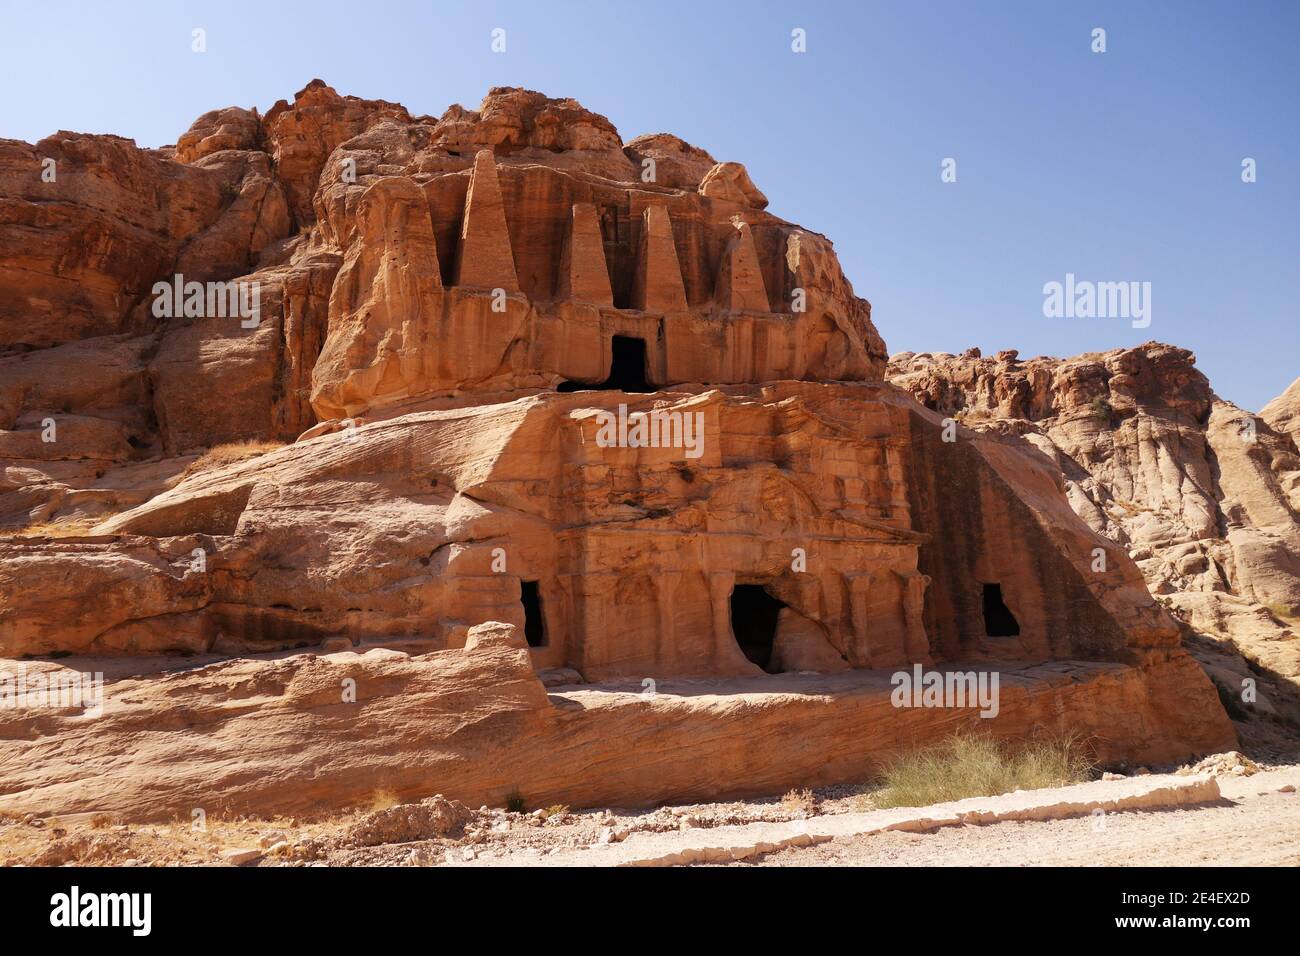 Des bâtiments étonnants ont été découpés dans les falaises de grès de la Jordanie désert Banque D'Images